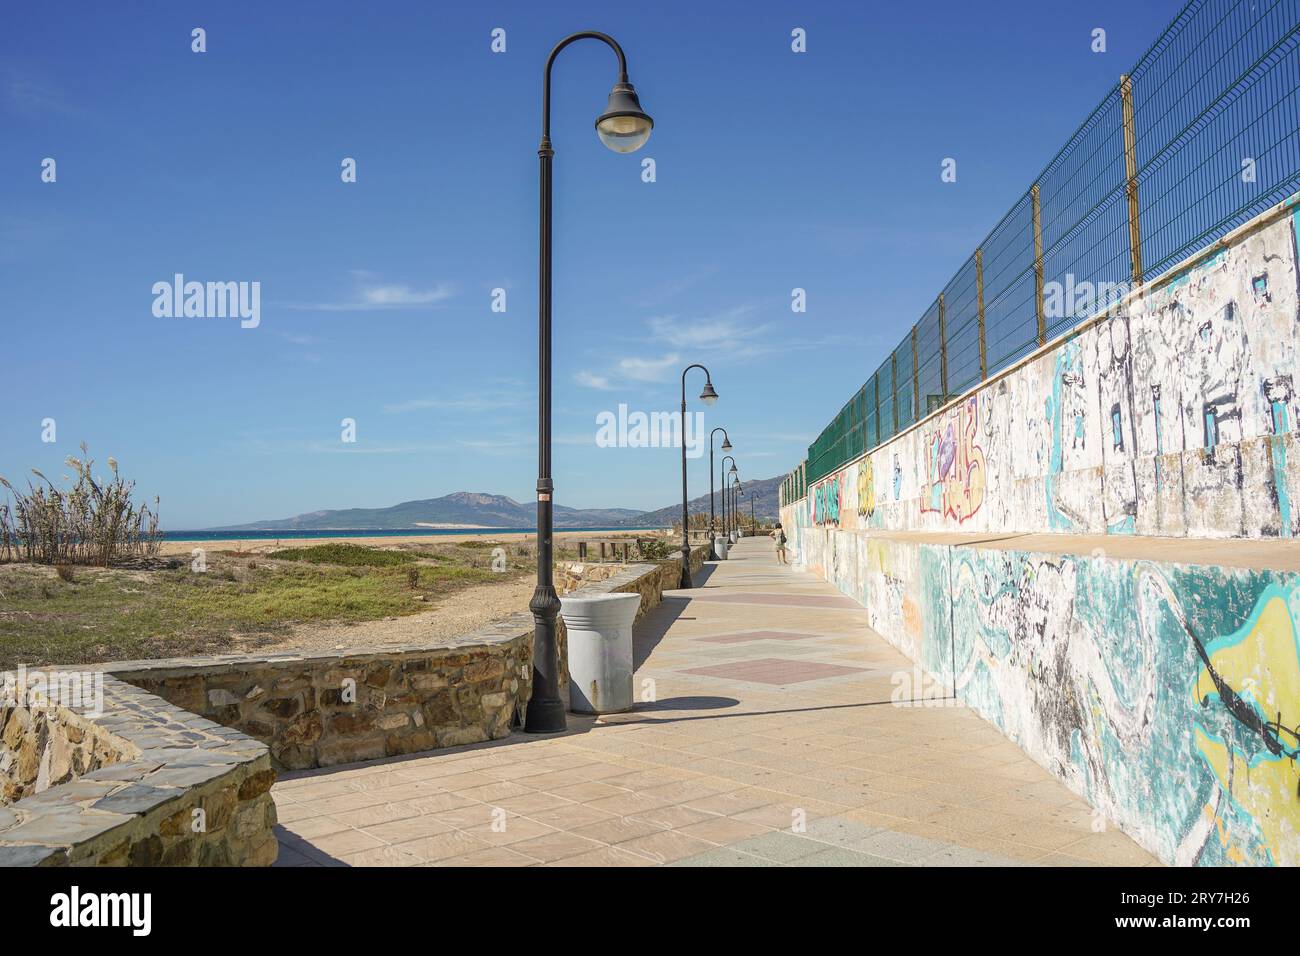 Fußgängerweg, Promenade mit Straßenlaternen und Graffiti an der Wand neben dem Strand, Tarifa, Spanien. Stockfoto